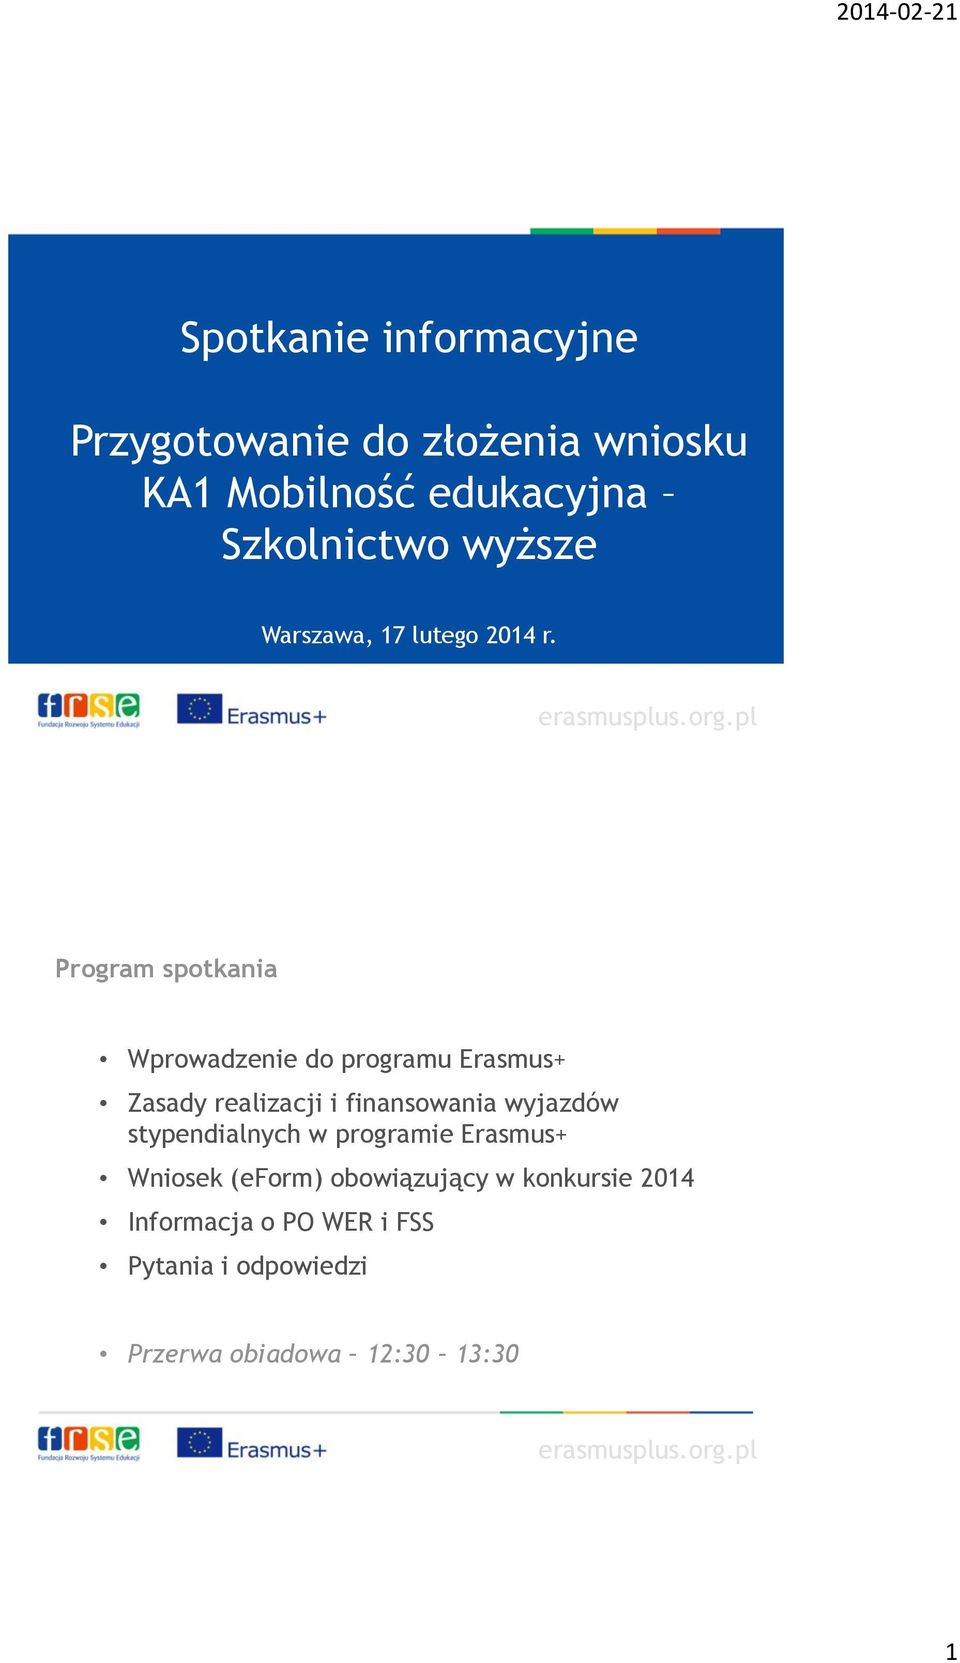 Program spotkania Wprowadzenie do programu Erasmus+ Zasady realizacji i finansowania wyjazdów